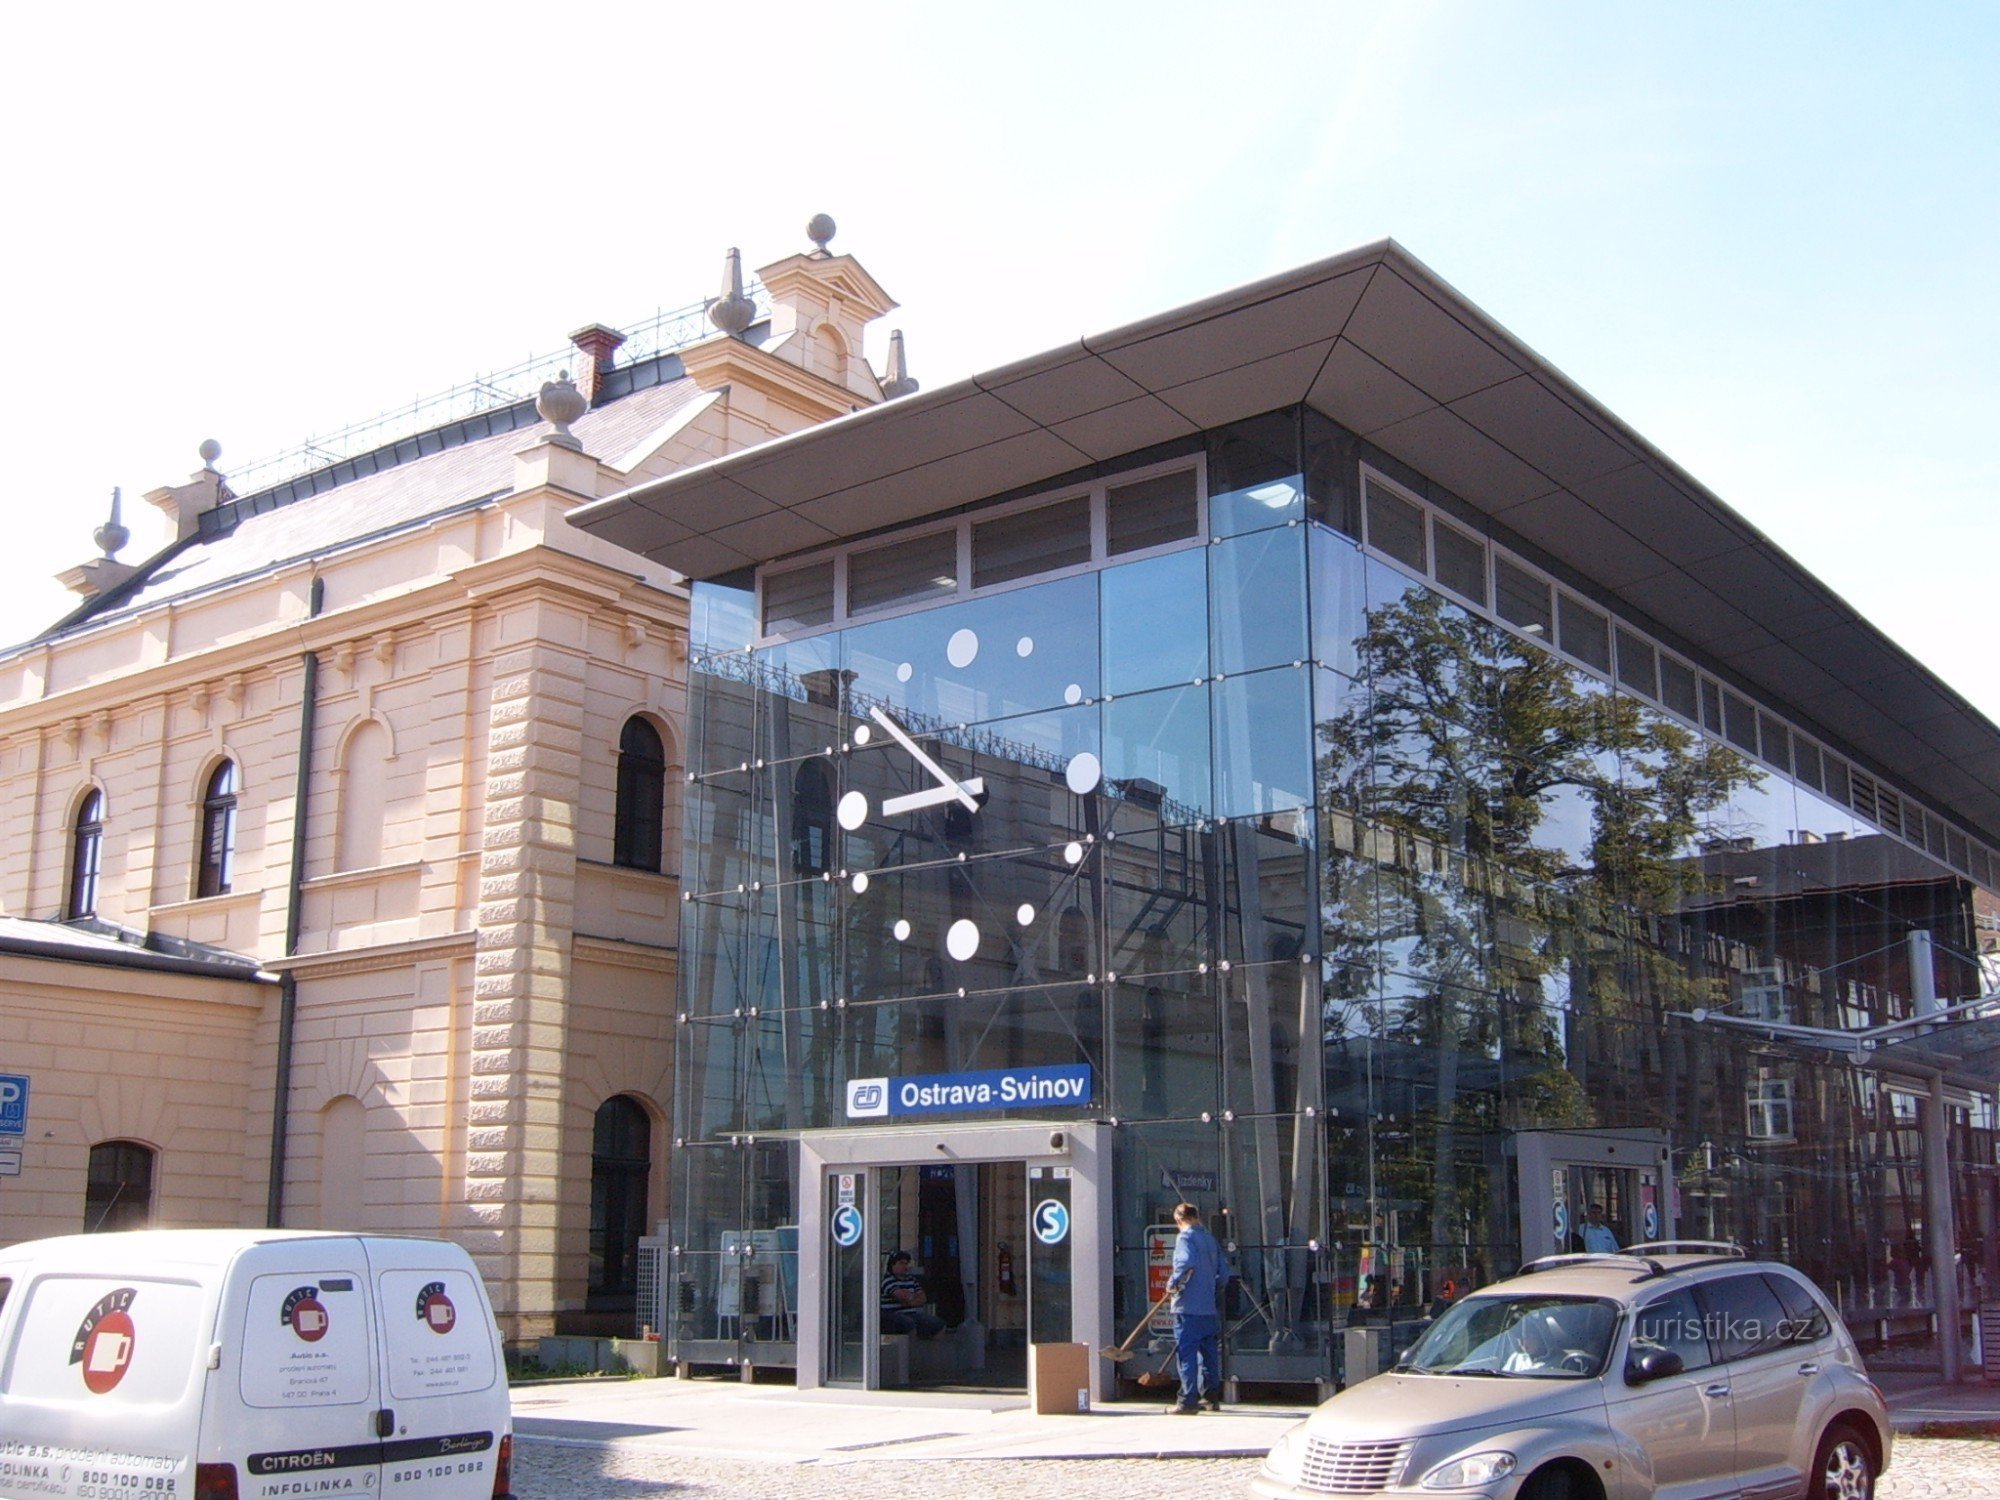 Forsendelsesbygning af Ostrava Svinov-stationen